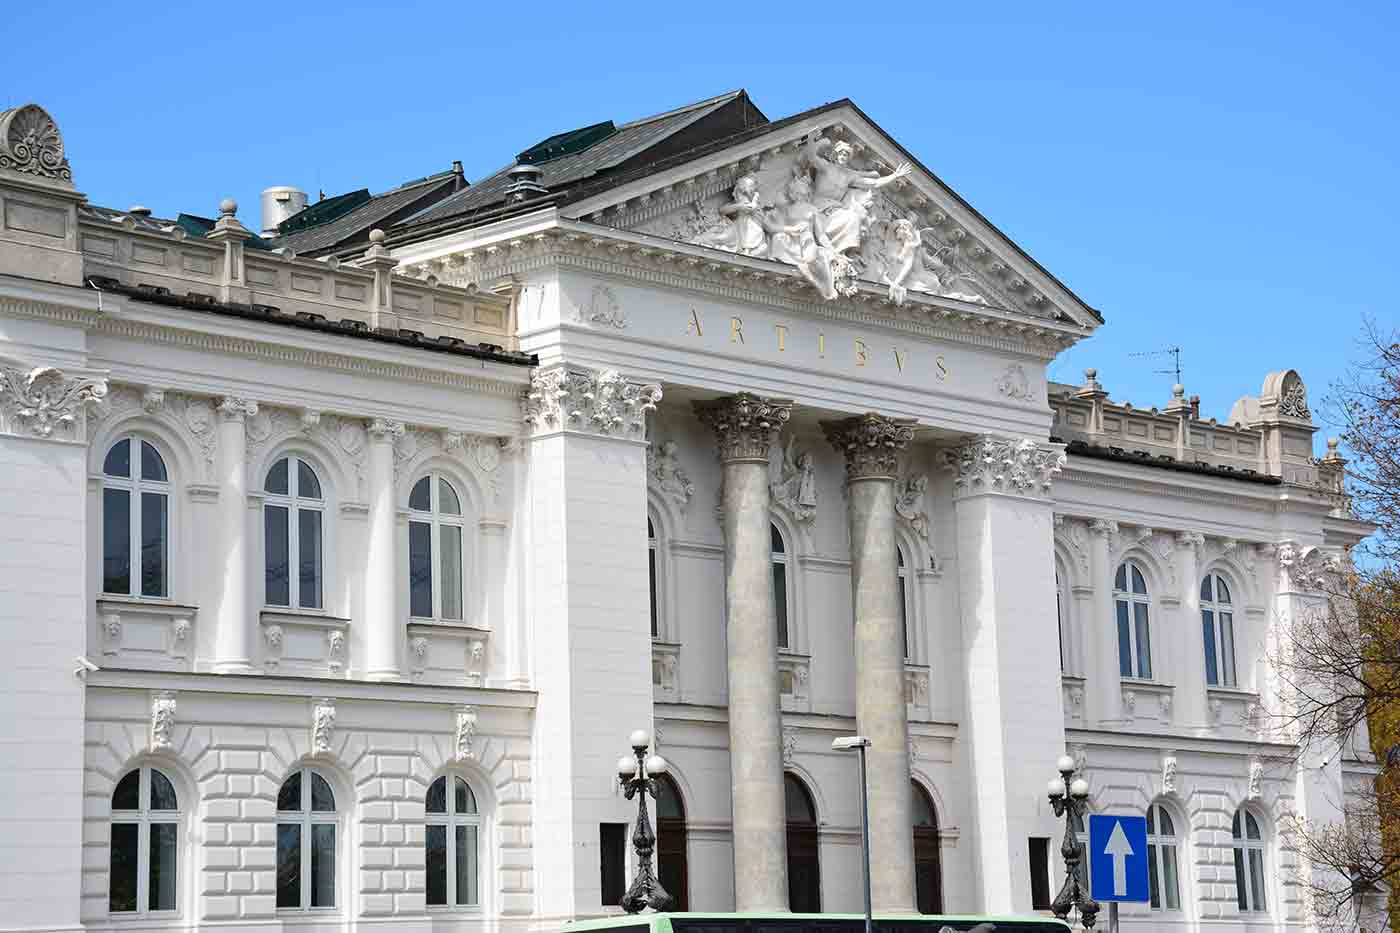 Zachęta National Gallery of Art